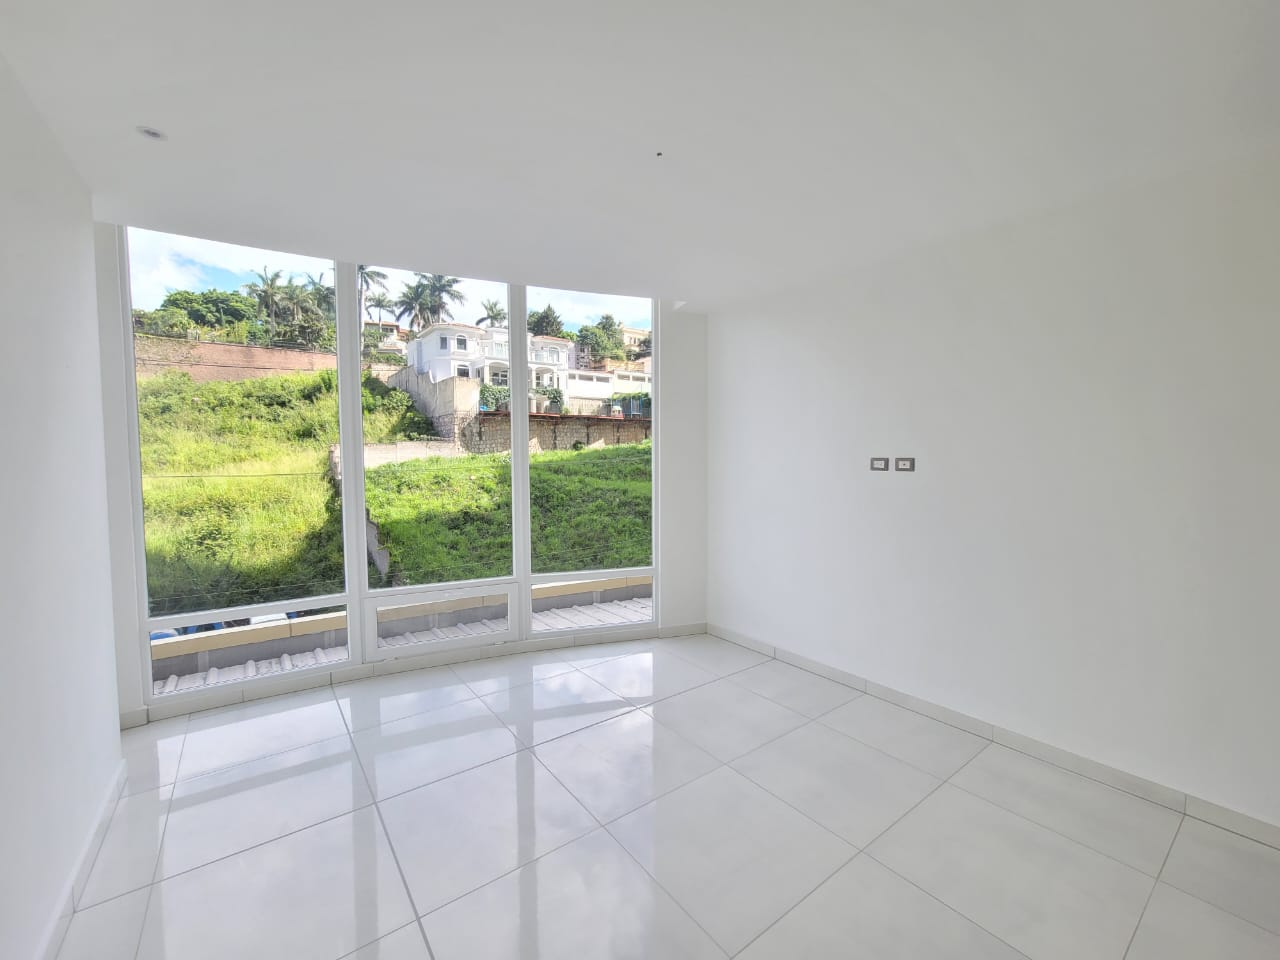 Habitación con paredes de color blanco, con suelo de porcelanat, cuenta con closet de madera clara, cuenta con un amplio ventanal y su propio aire acondicionado más su baño privado.